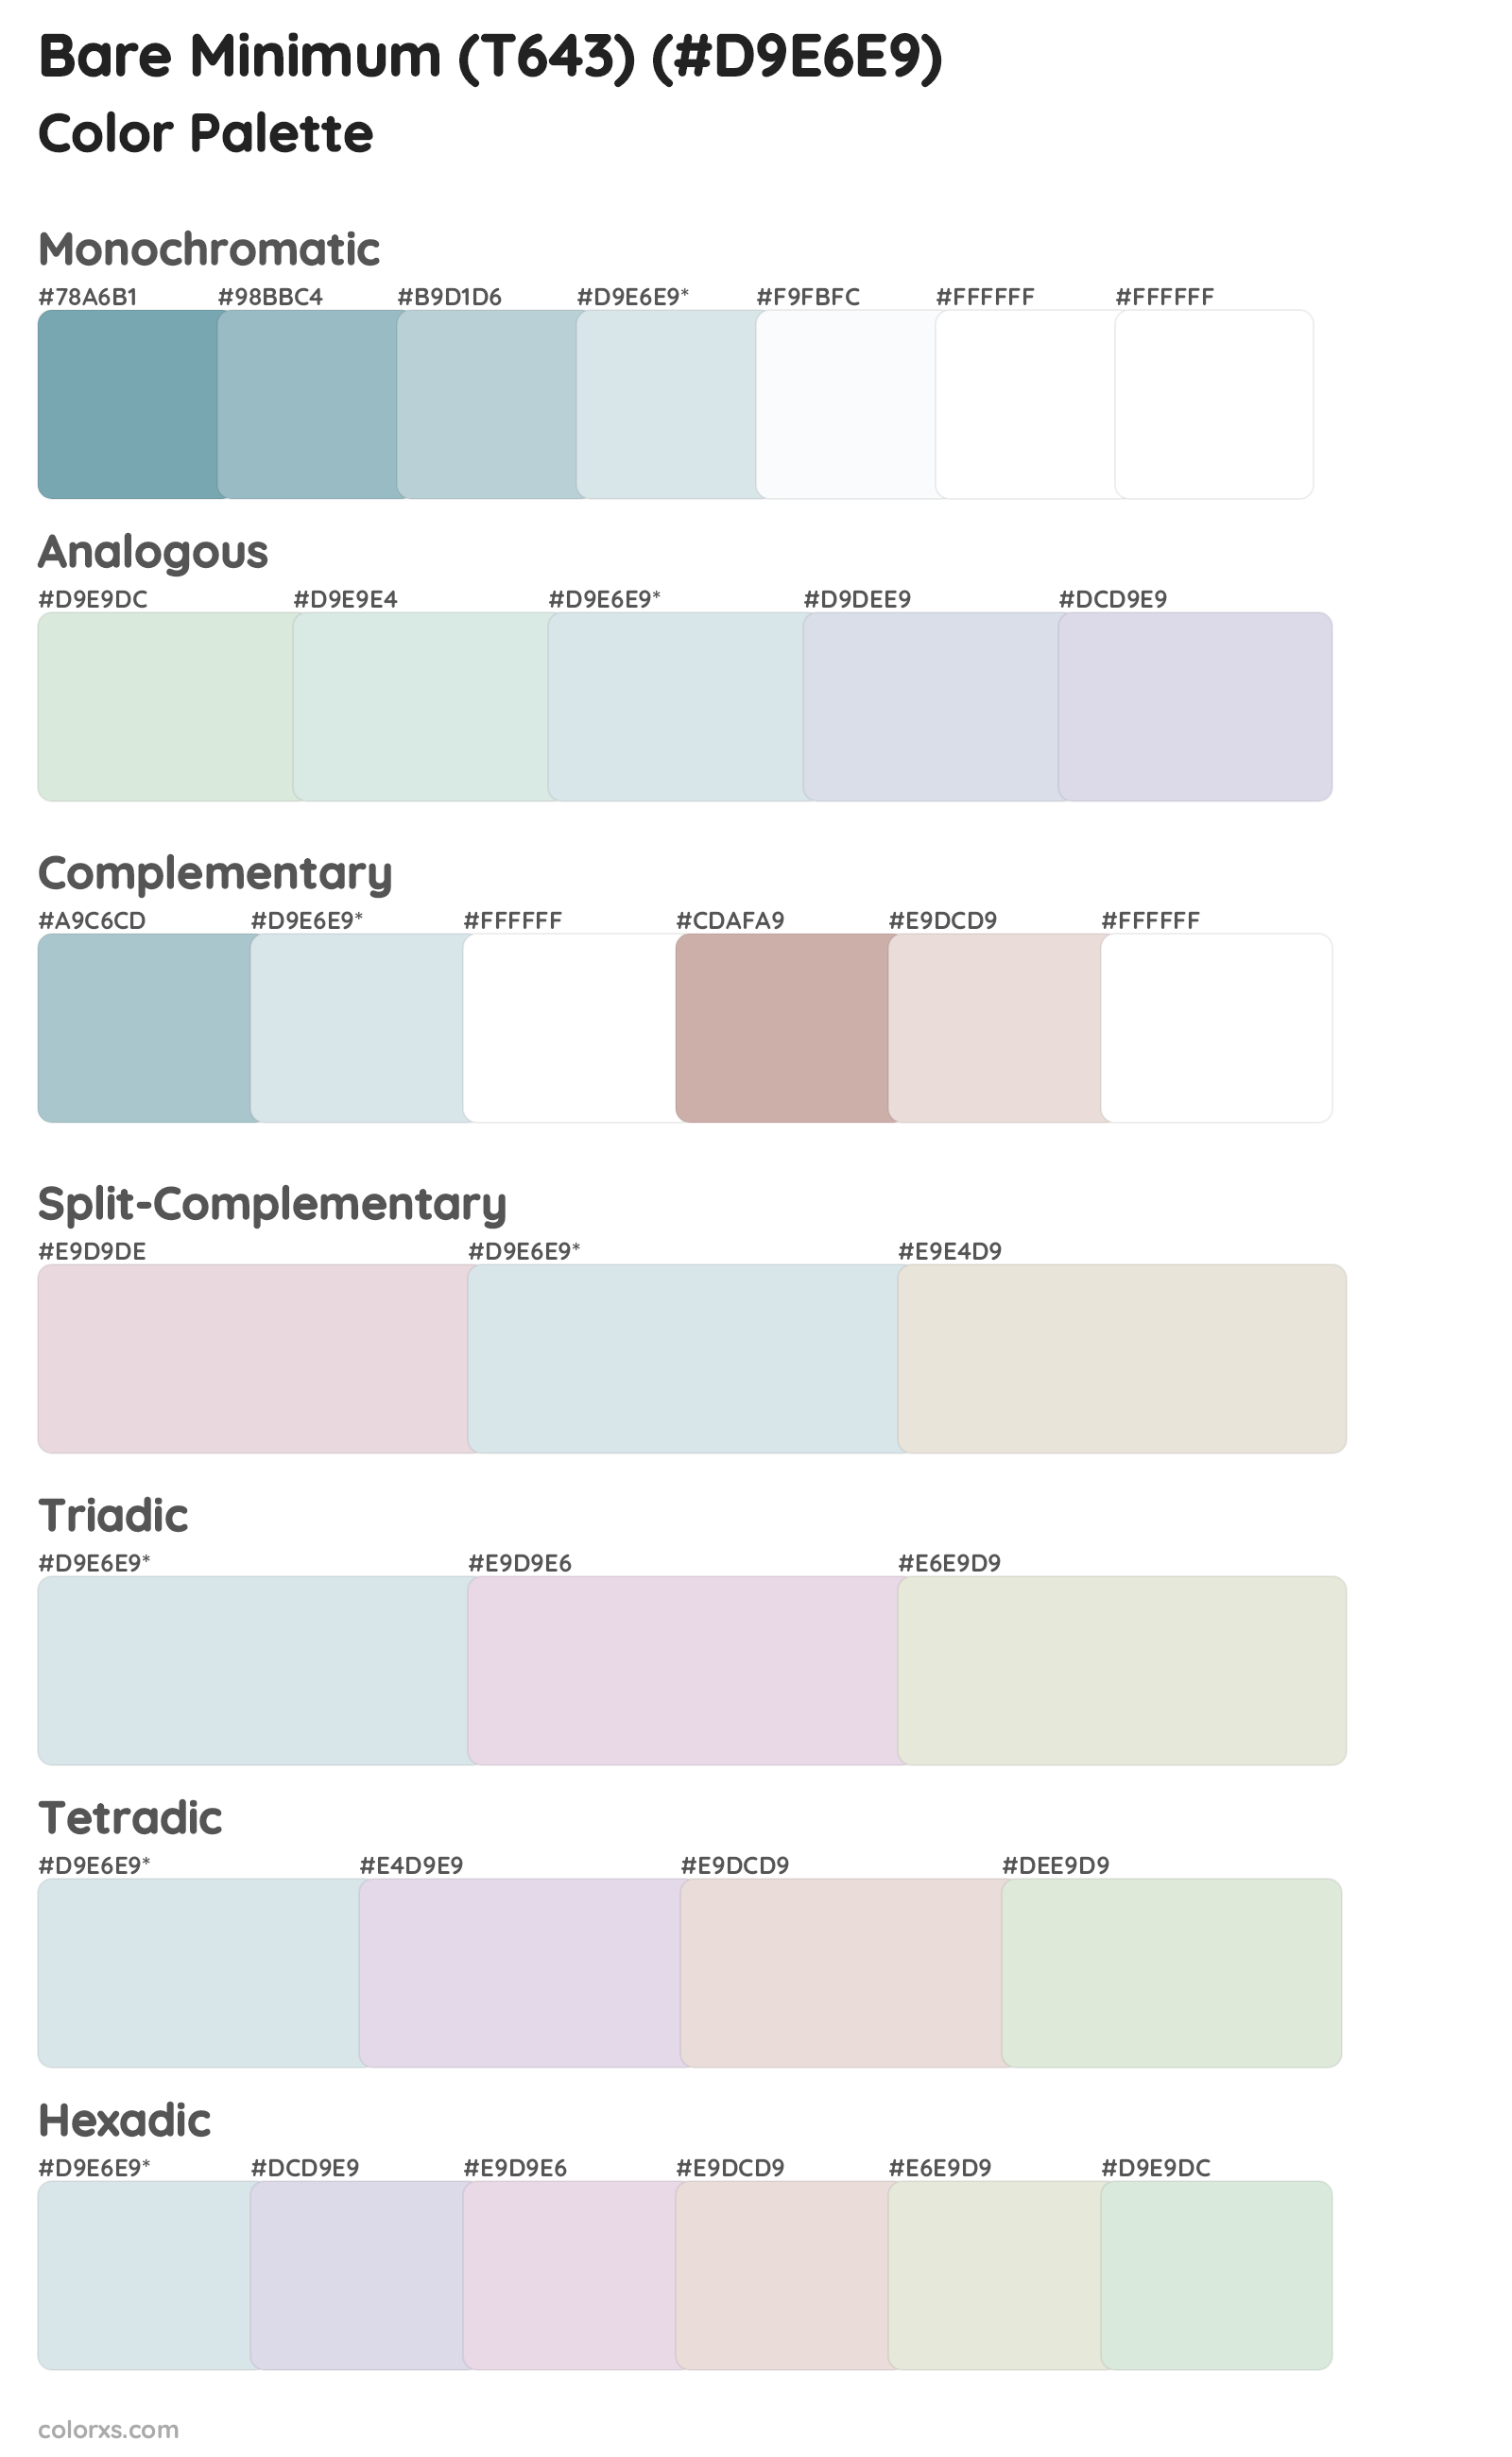 Bare Minimum (T643) Color Scheme Palettes